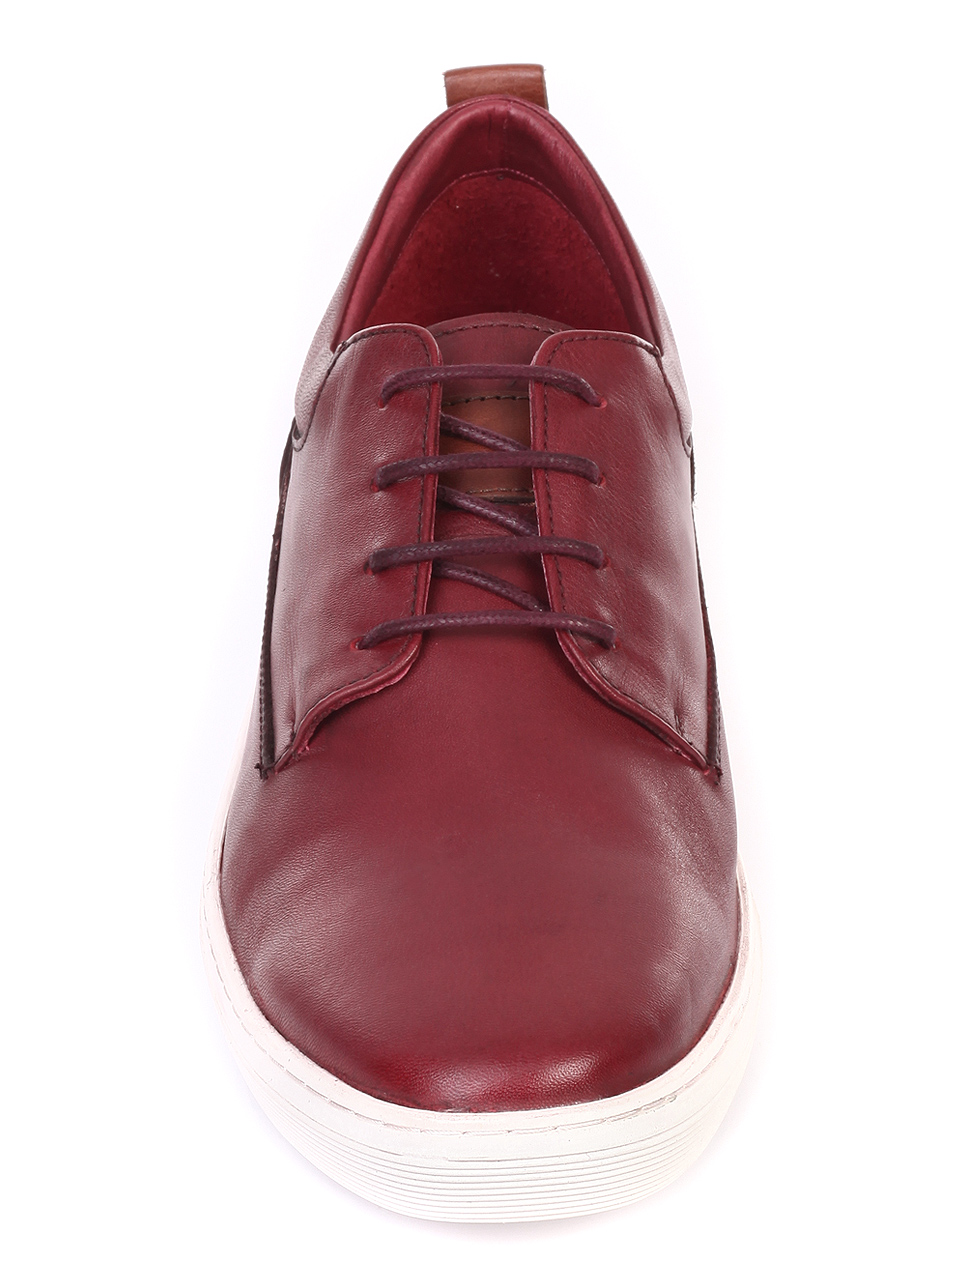 Ежедневни мъжки обувки от естествена кожа 7AT-19455 bordo